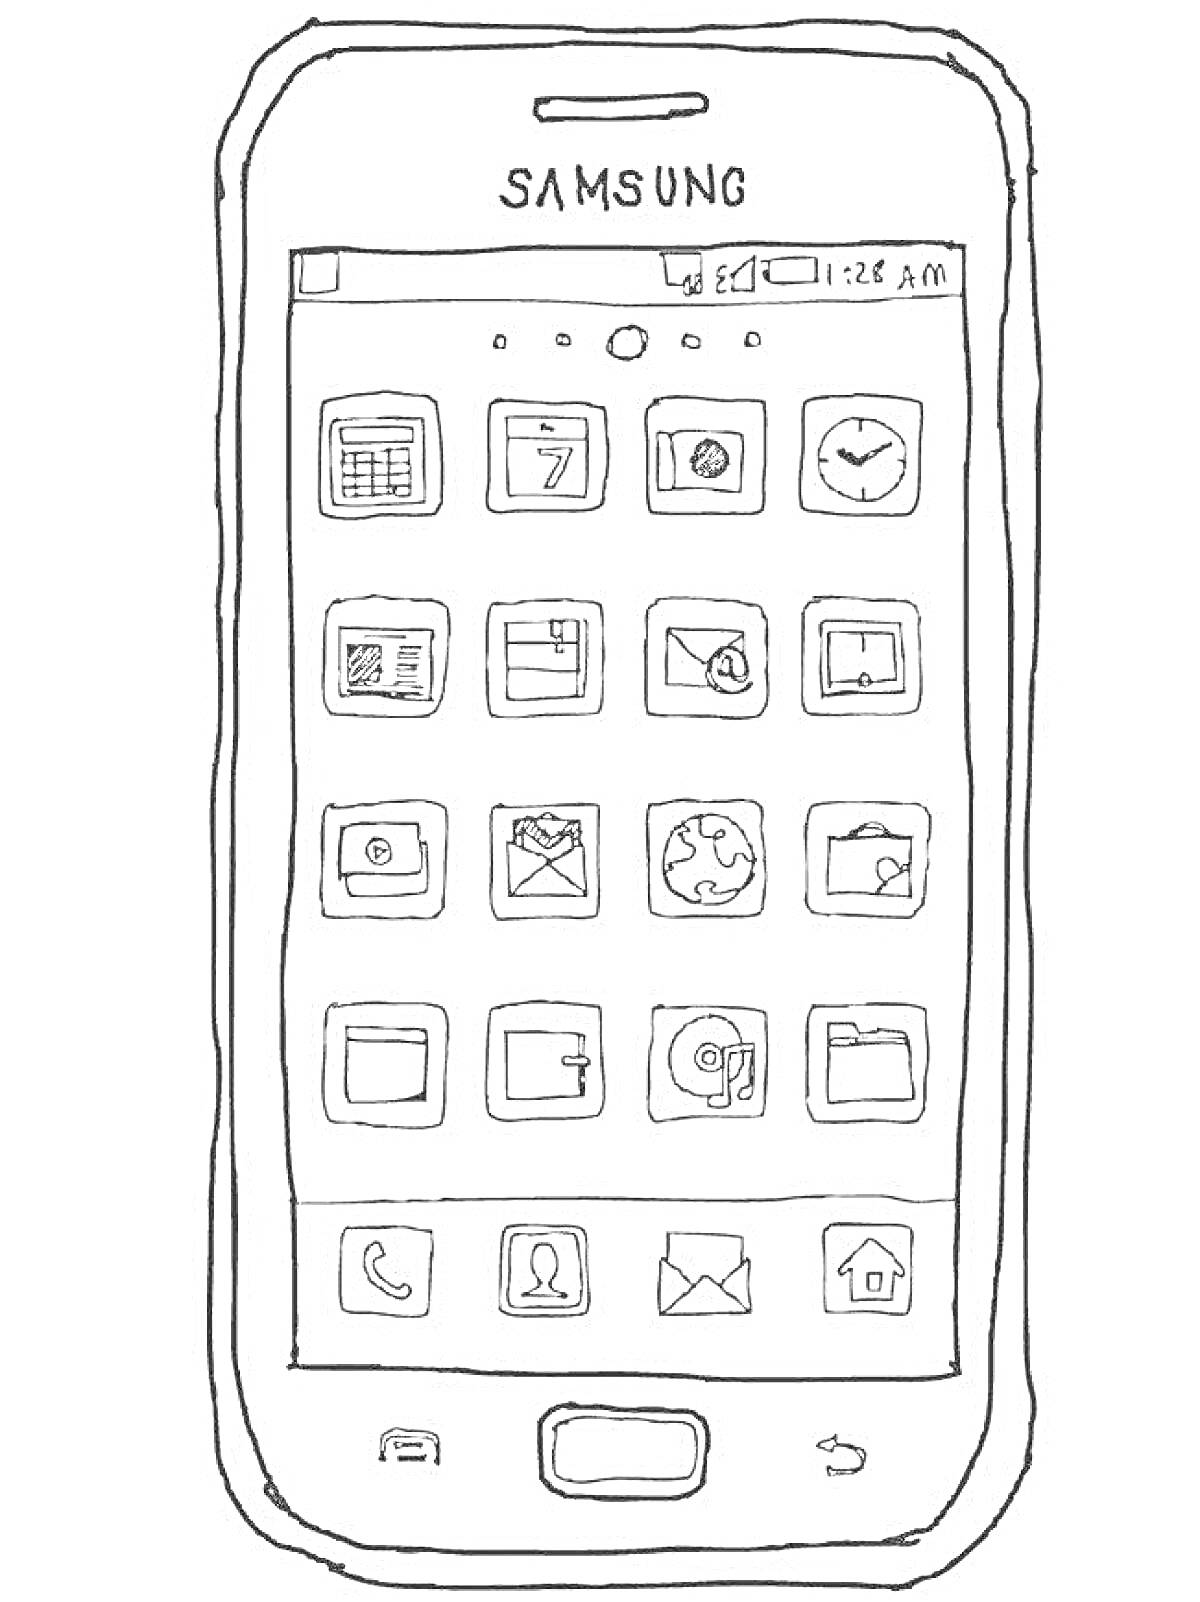 Раскраска Телефон Samsung с иконками приложений (календарь, контакты, часы, настройки, сообщения, галерея, браузер, калькулятор, почта)